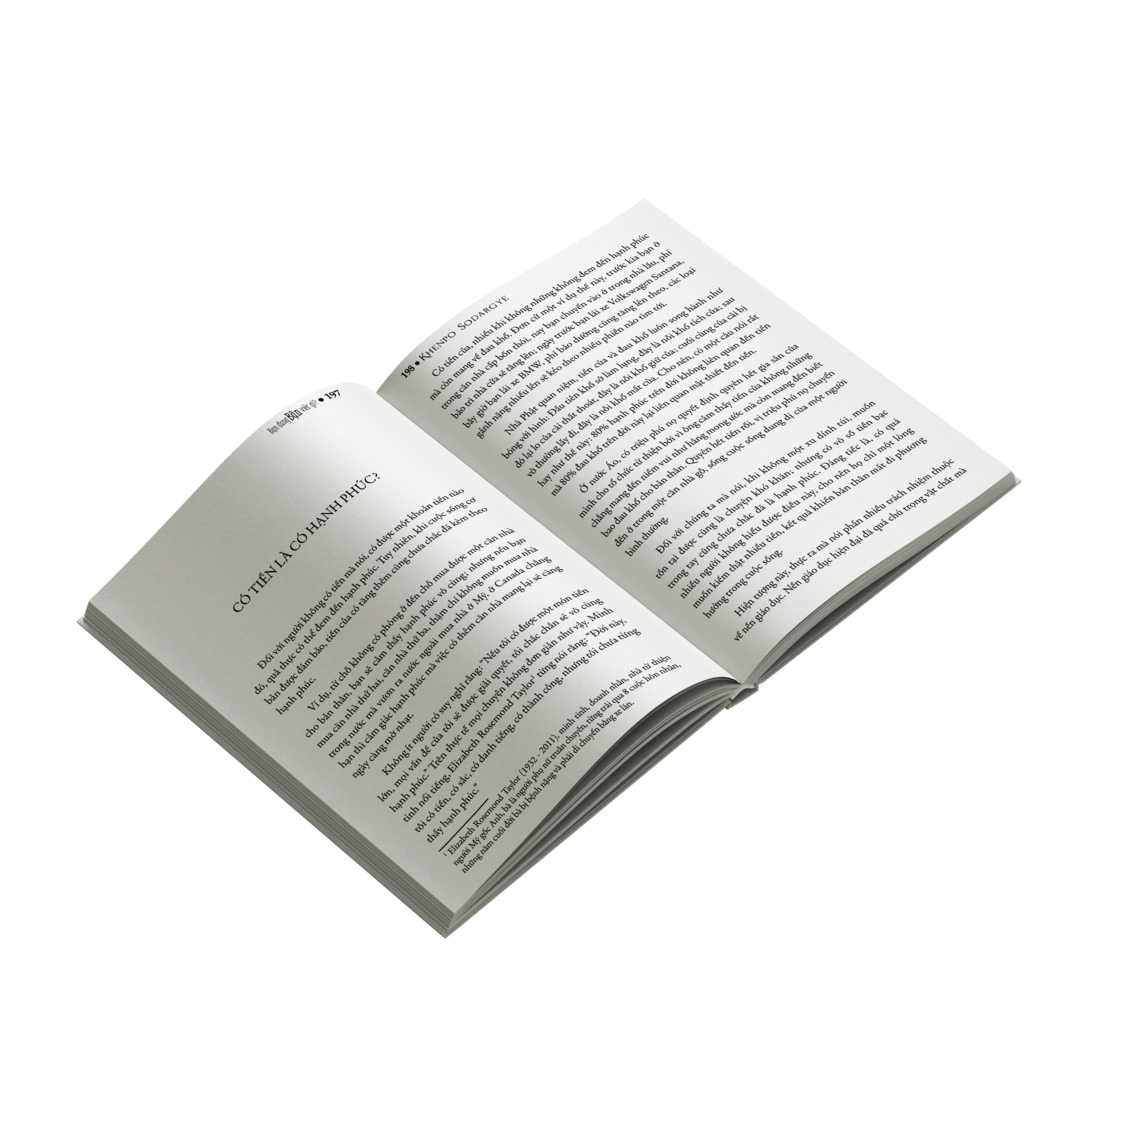 BỘ SÁCH "BẬN" ( Bạn Đang Bận Việc Gì Và Chẳng Gì Khiến Ta Bận Lòng ) - Sách Tôn Giáo, Nghệ Thuật Và Văn Hóa, Tác Giả KHENPO SODARGYE - Á Châu Books, bìa mềm, in màu